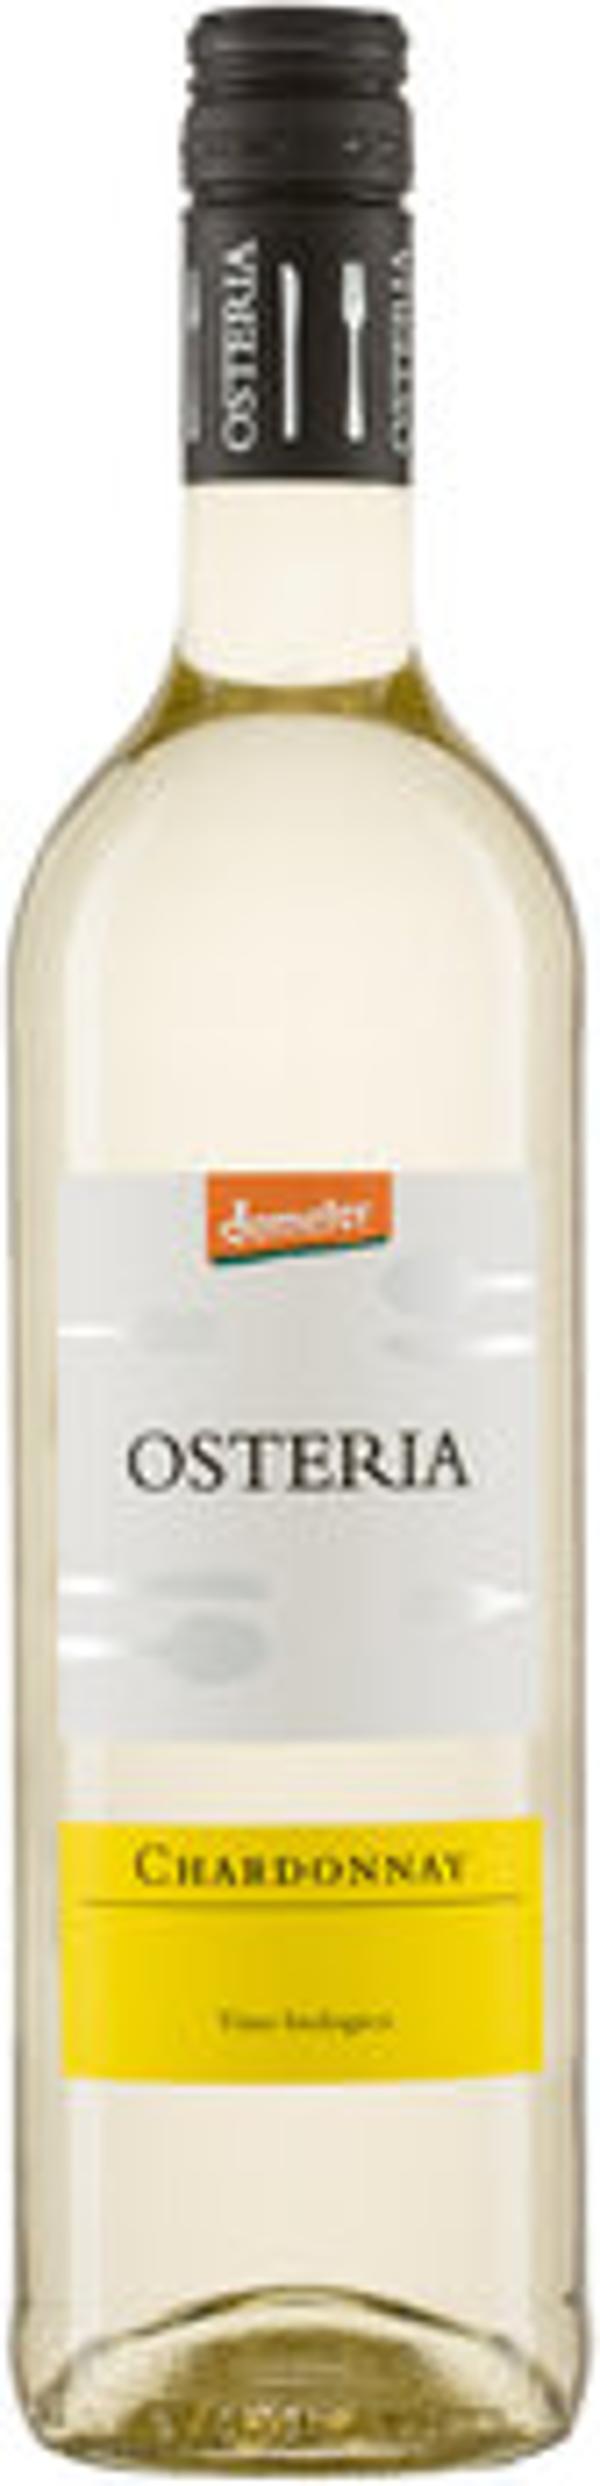 Produktfoto zu Osteria Chardonnay, 0,75 l